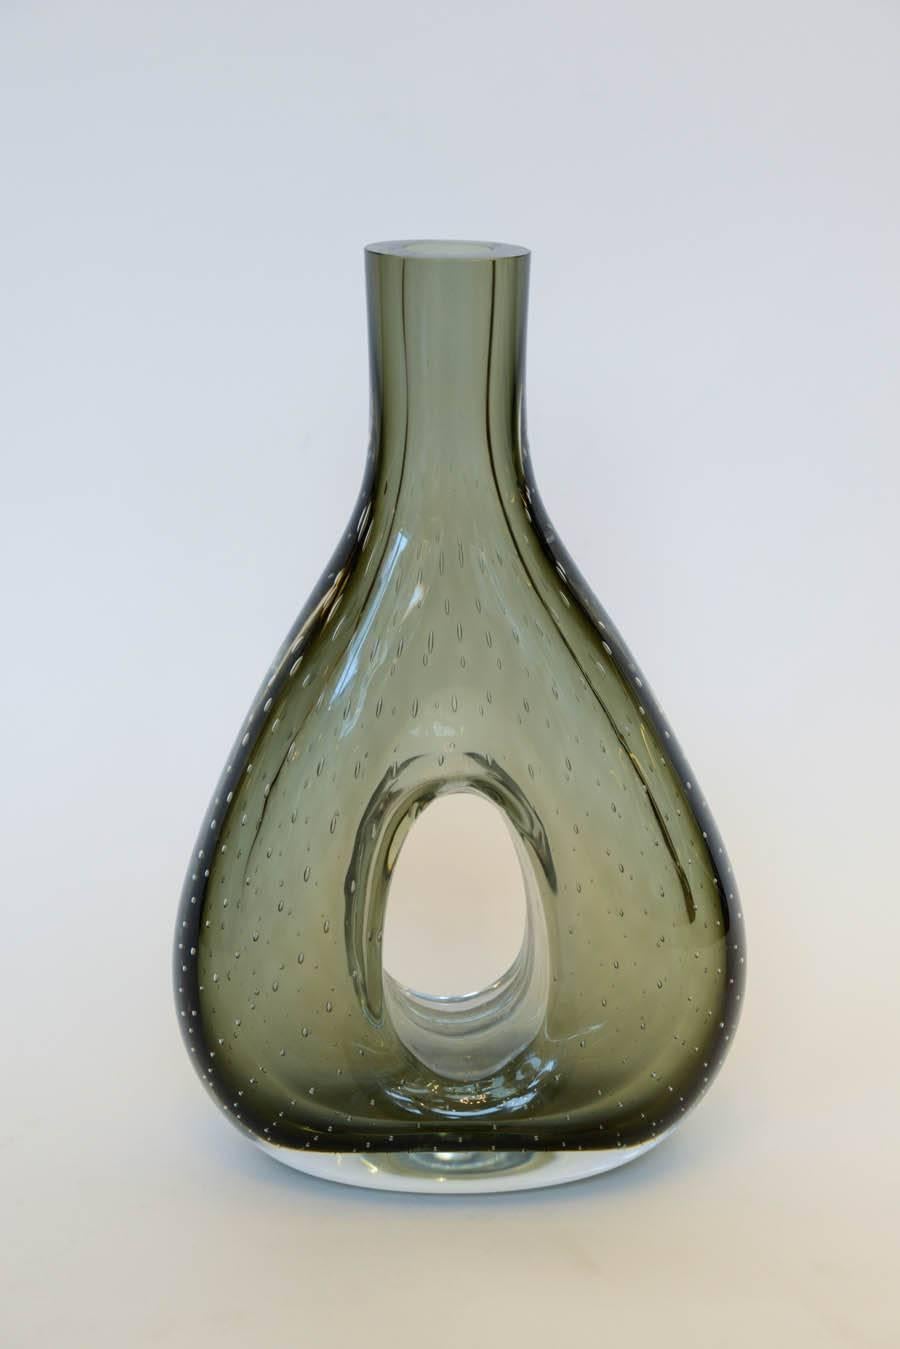 Pair of Smoked Murano Glass Vases Attributed to Venini 1